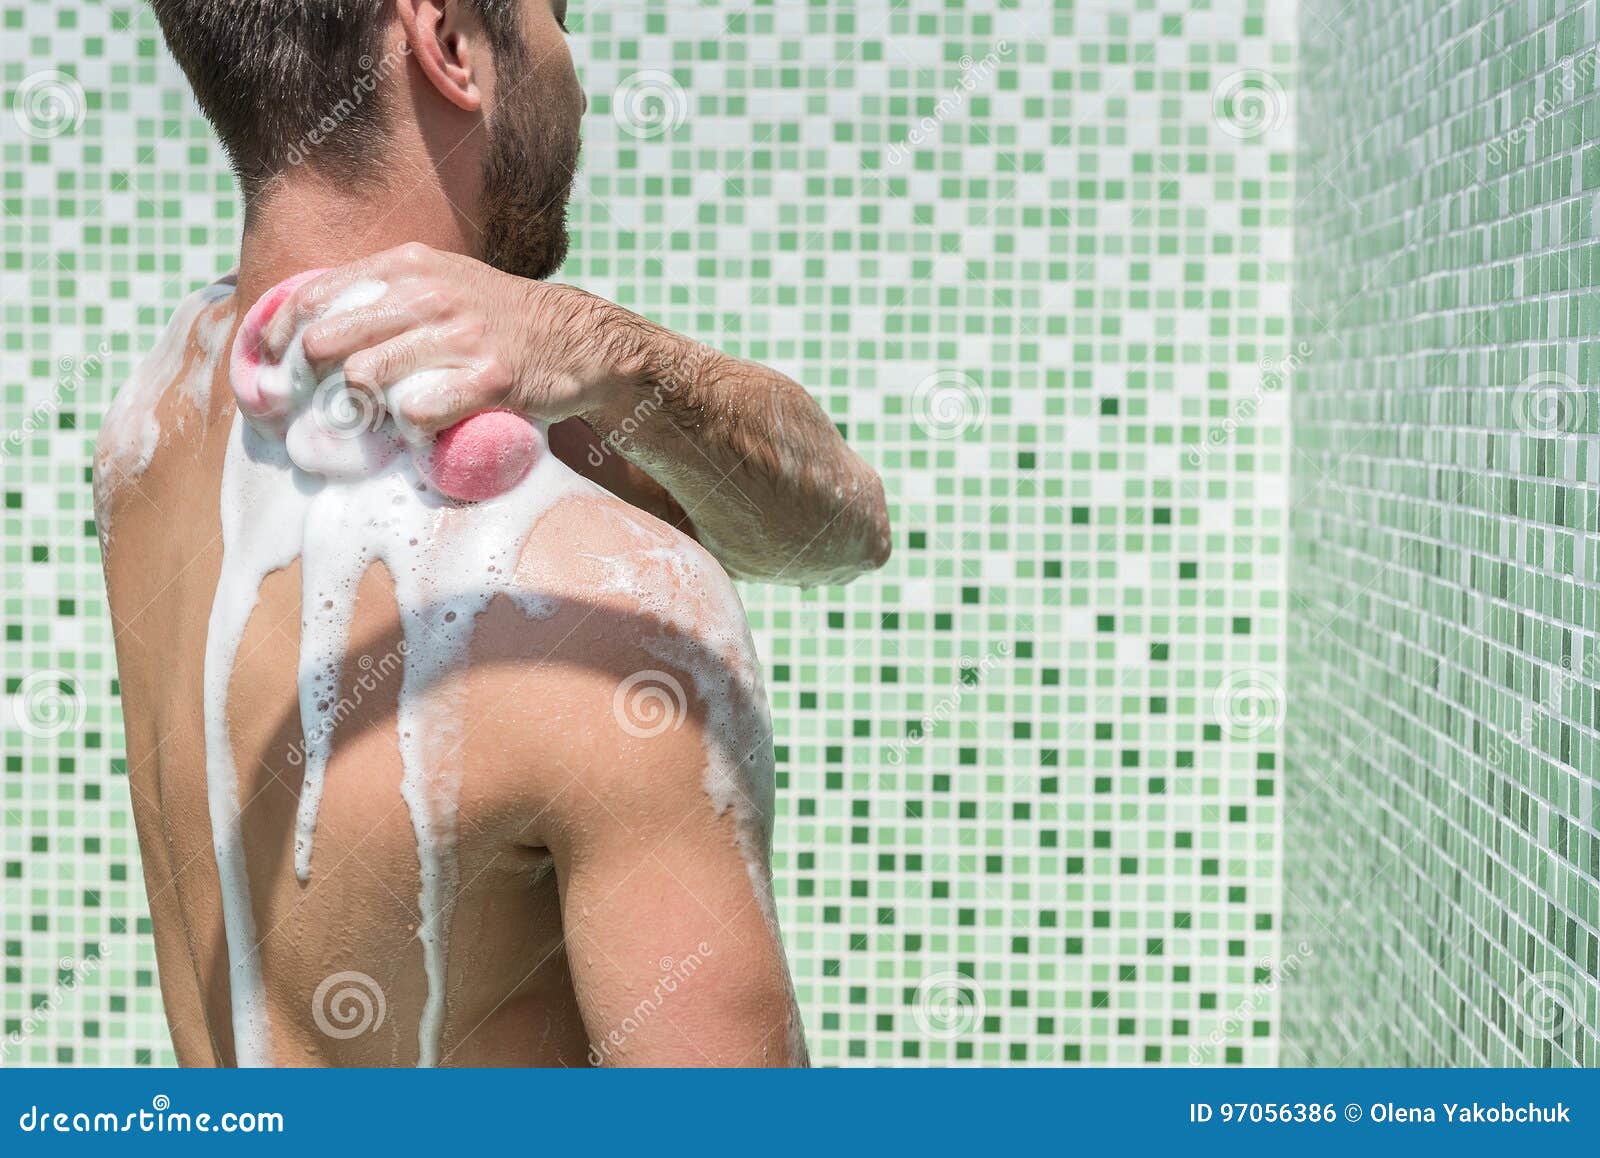 Человек после душа. Парни в общем душе. Бородатый мужик в ванне. Мужчина перед душем. Мужчина в душе с мочалкой.